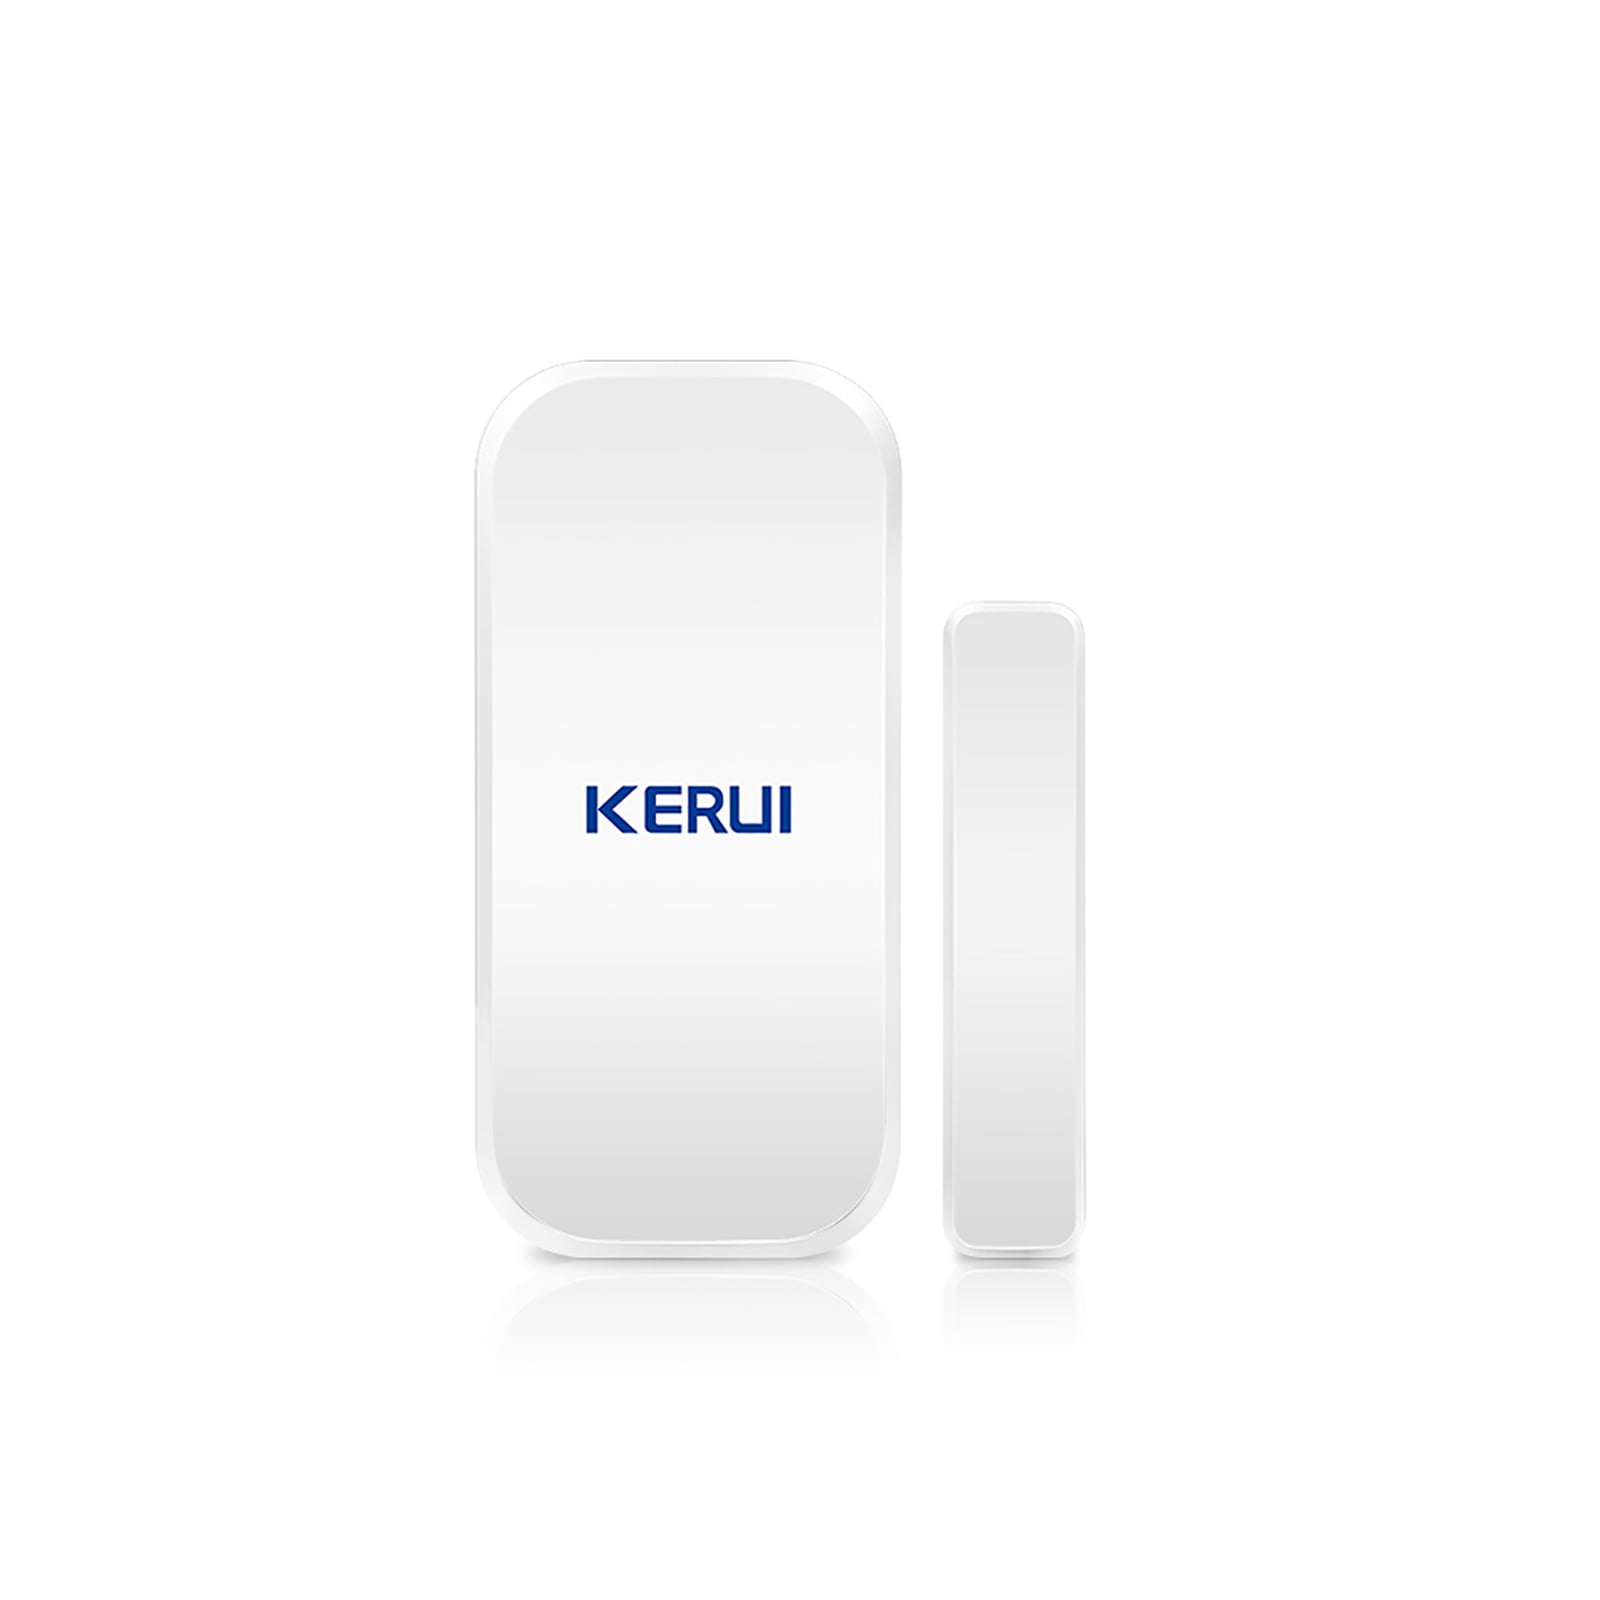 Details about   KERUI Wireless Door/Window Sensor Burglar Alarm Remote Control Home Security Kit 